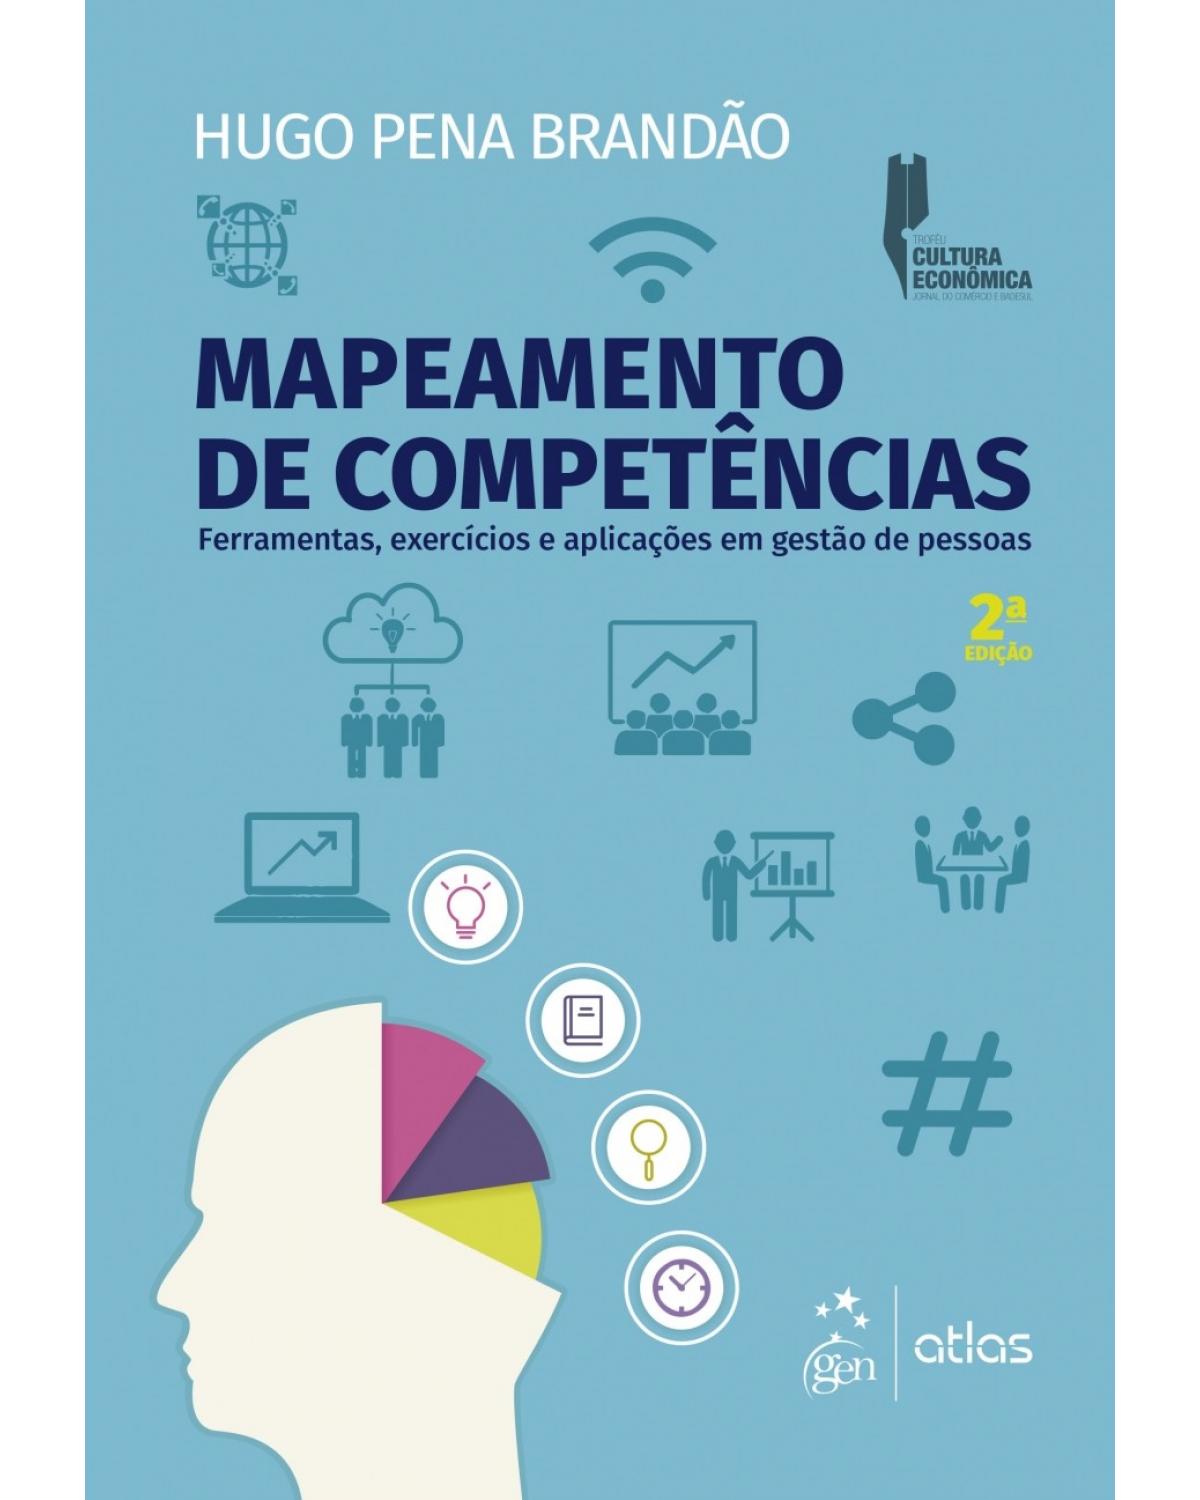 Mapeamento de competências - Ferramentas, exercícios e aplicações em gestão de pessoas - 2ª Edição | 2017